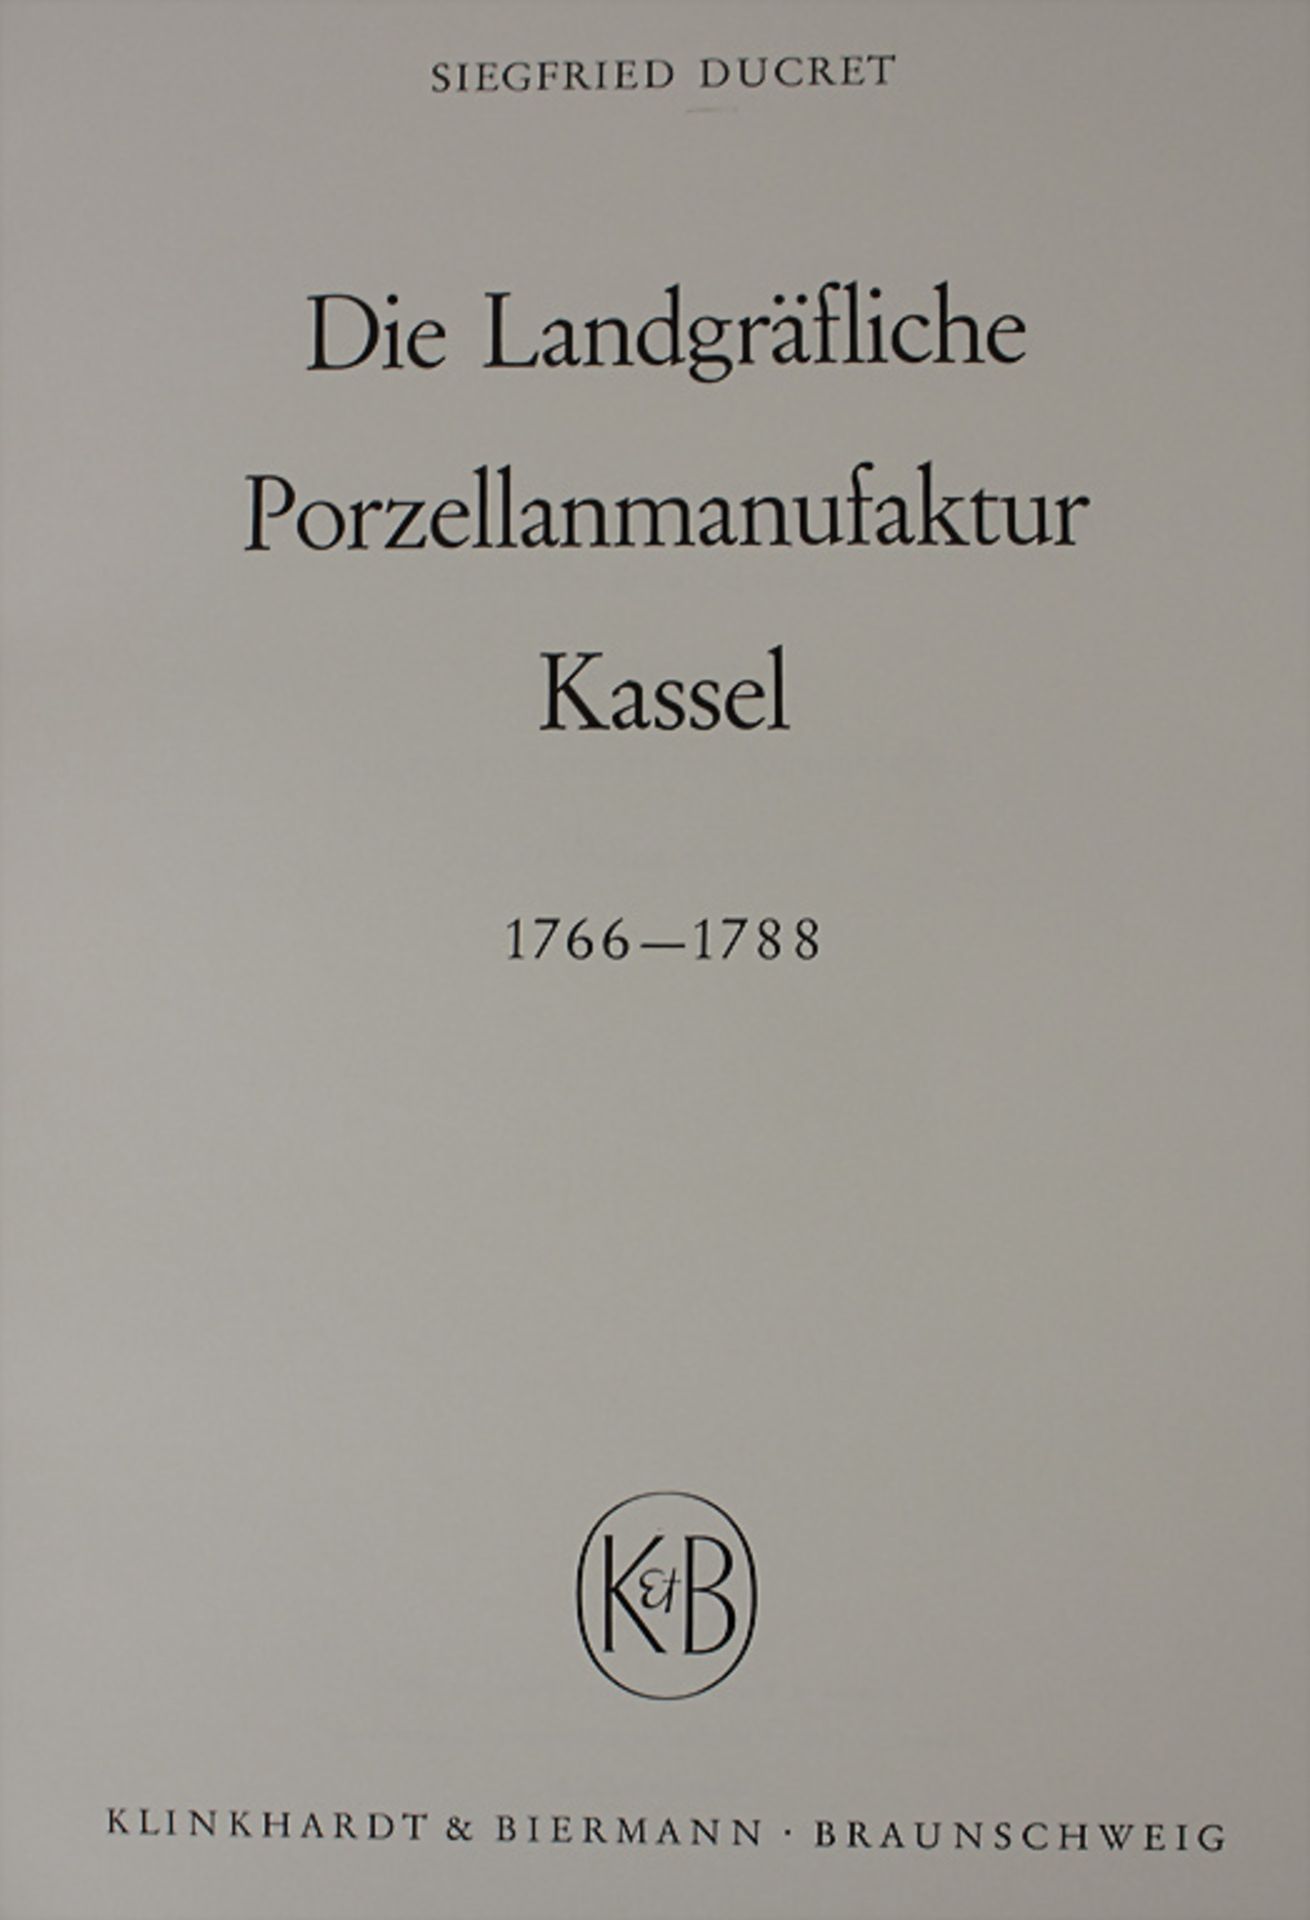 Siegfried Ducret: 'Die Landgräfliche Porzellanmanufaktur Kassel 1766-1788', Braunschweig, 1960 - Bild 2 aus 3